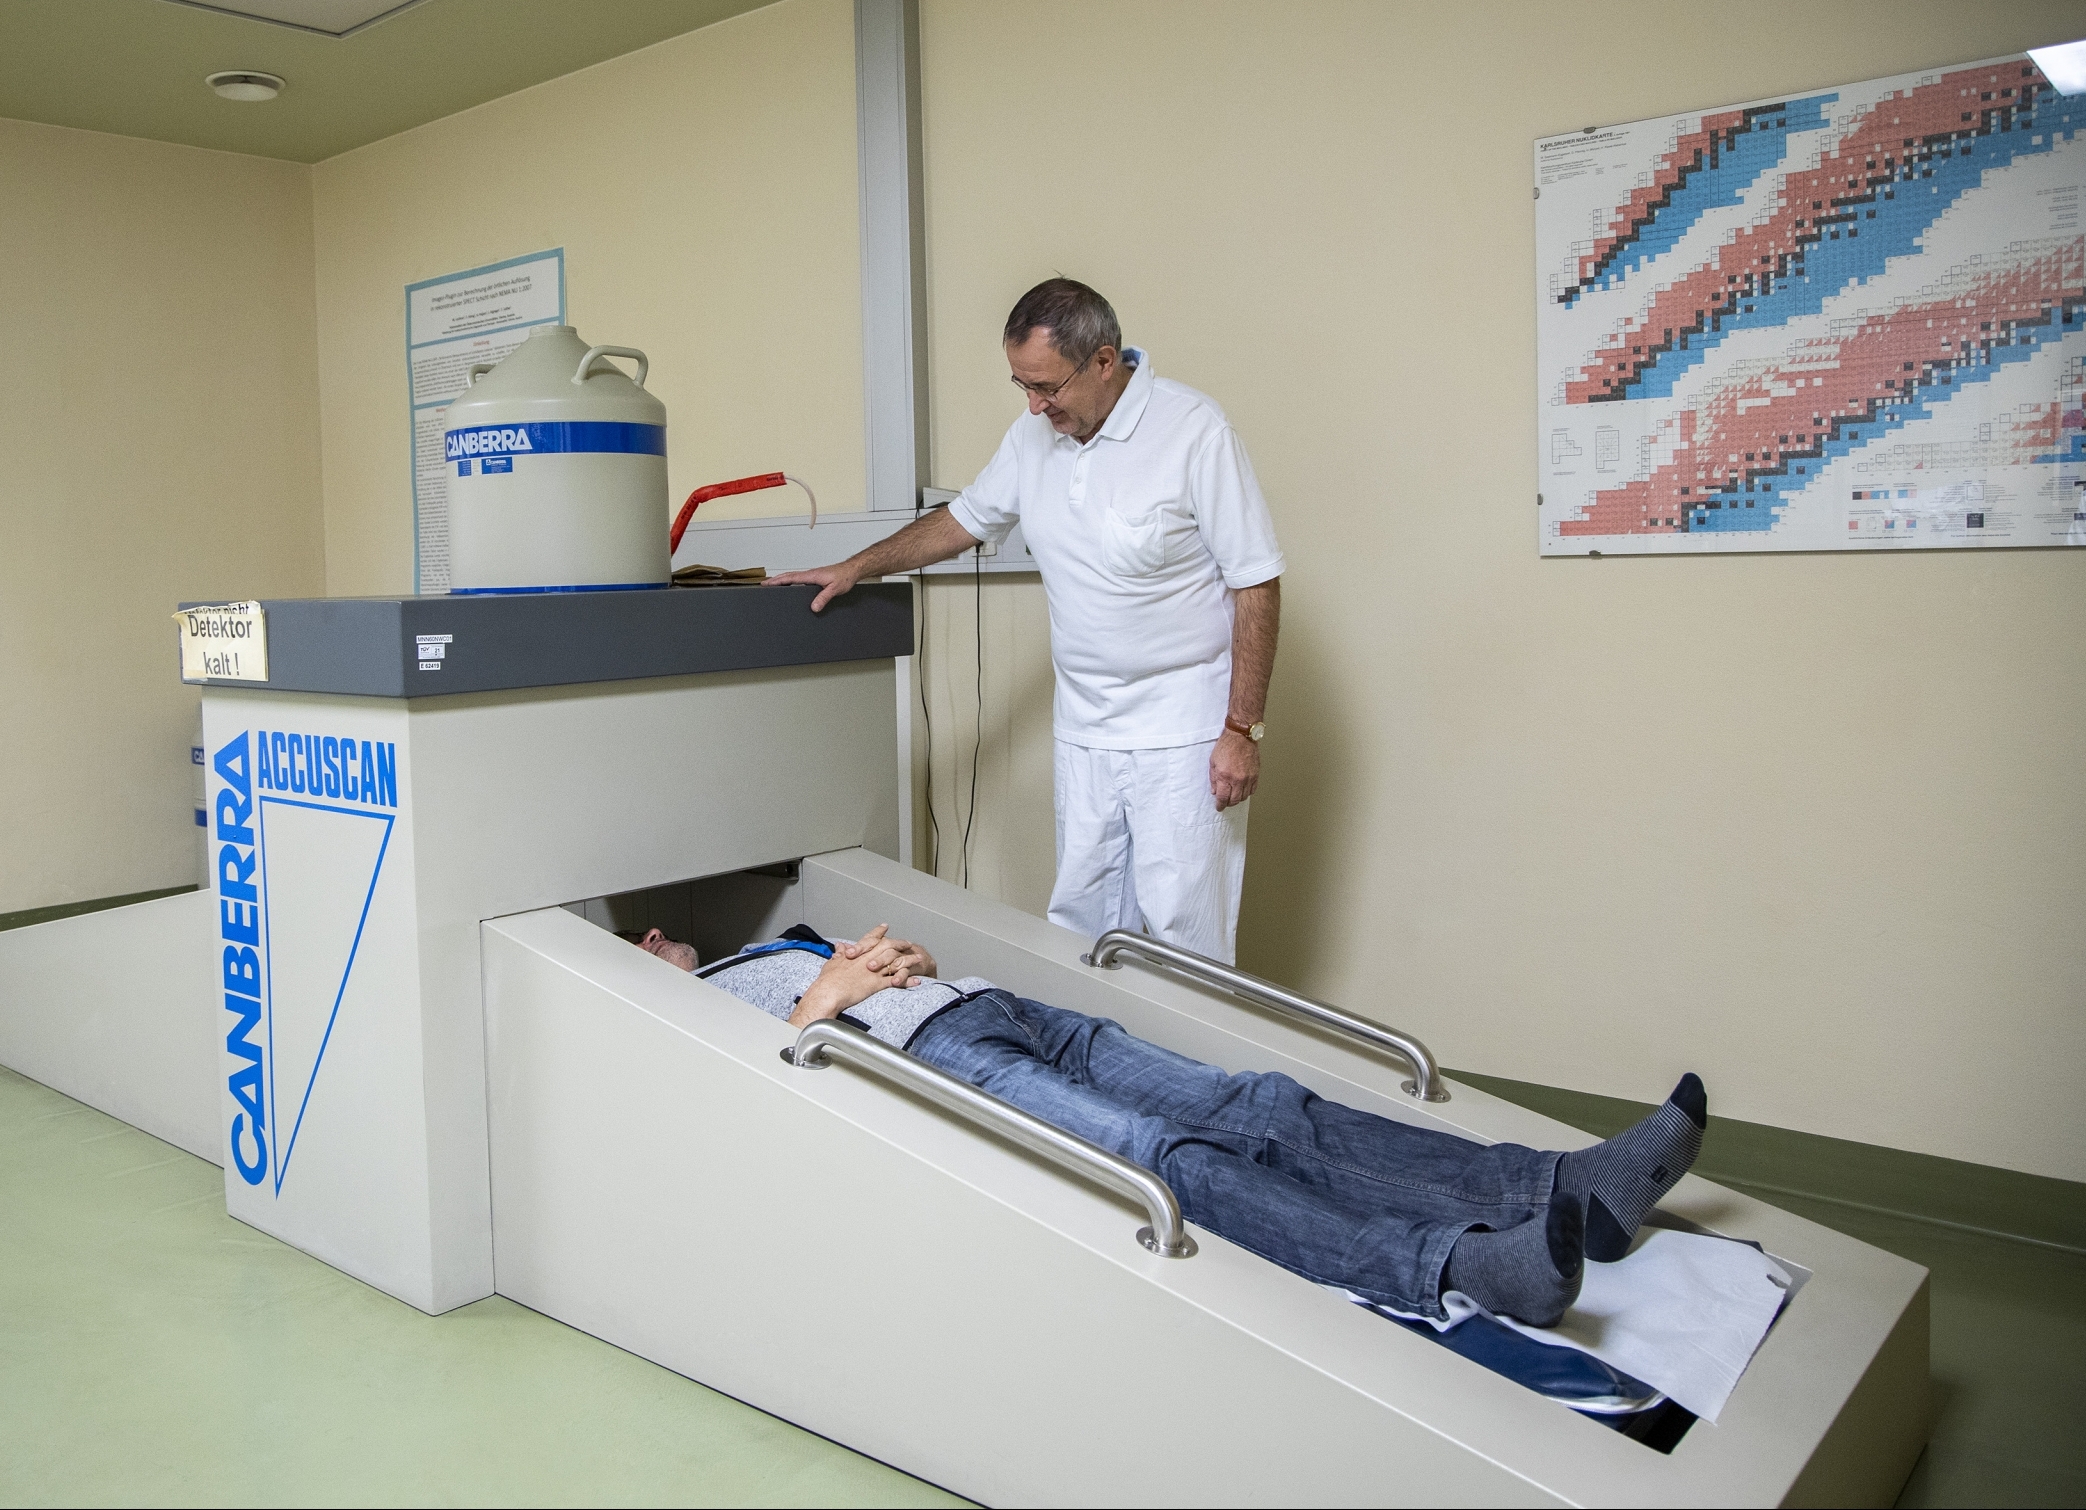 Arzt untersucht liegenden Patient in der Ambulanz für nukelarmedizinischer Diagnostik